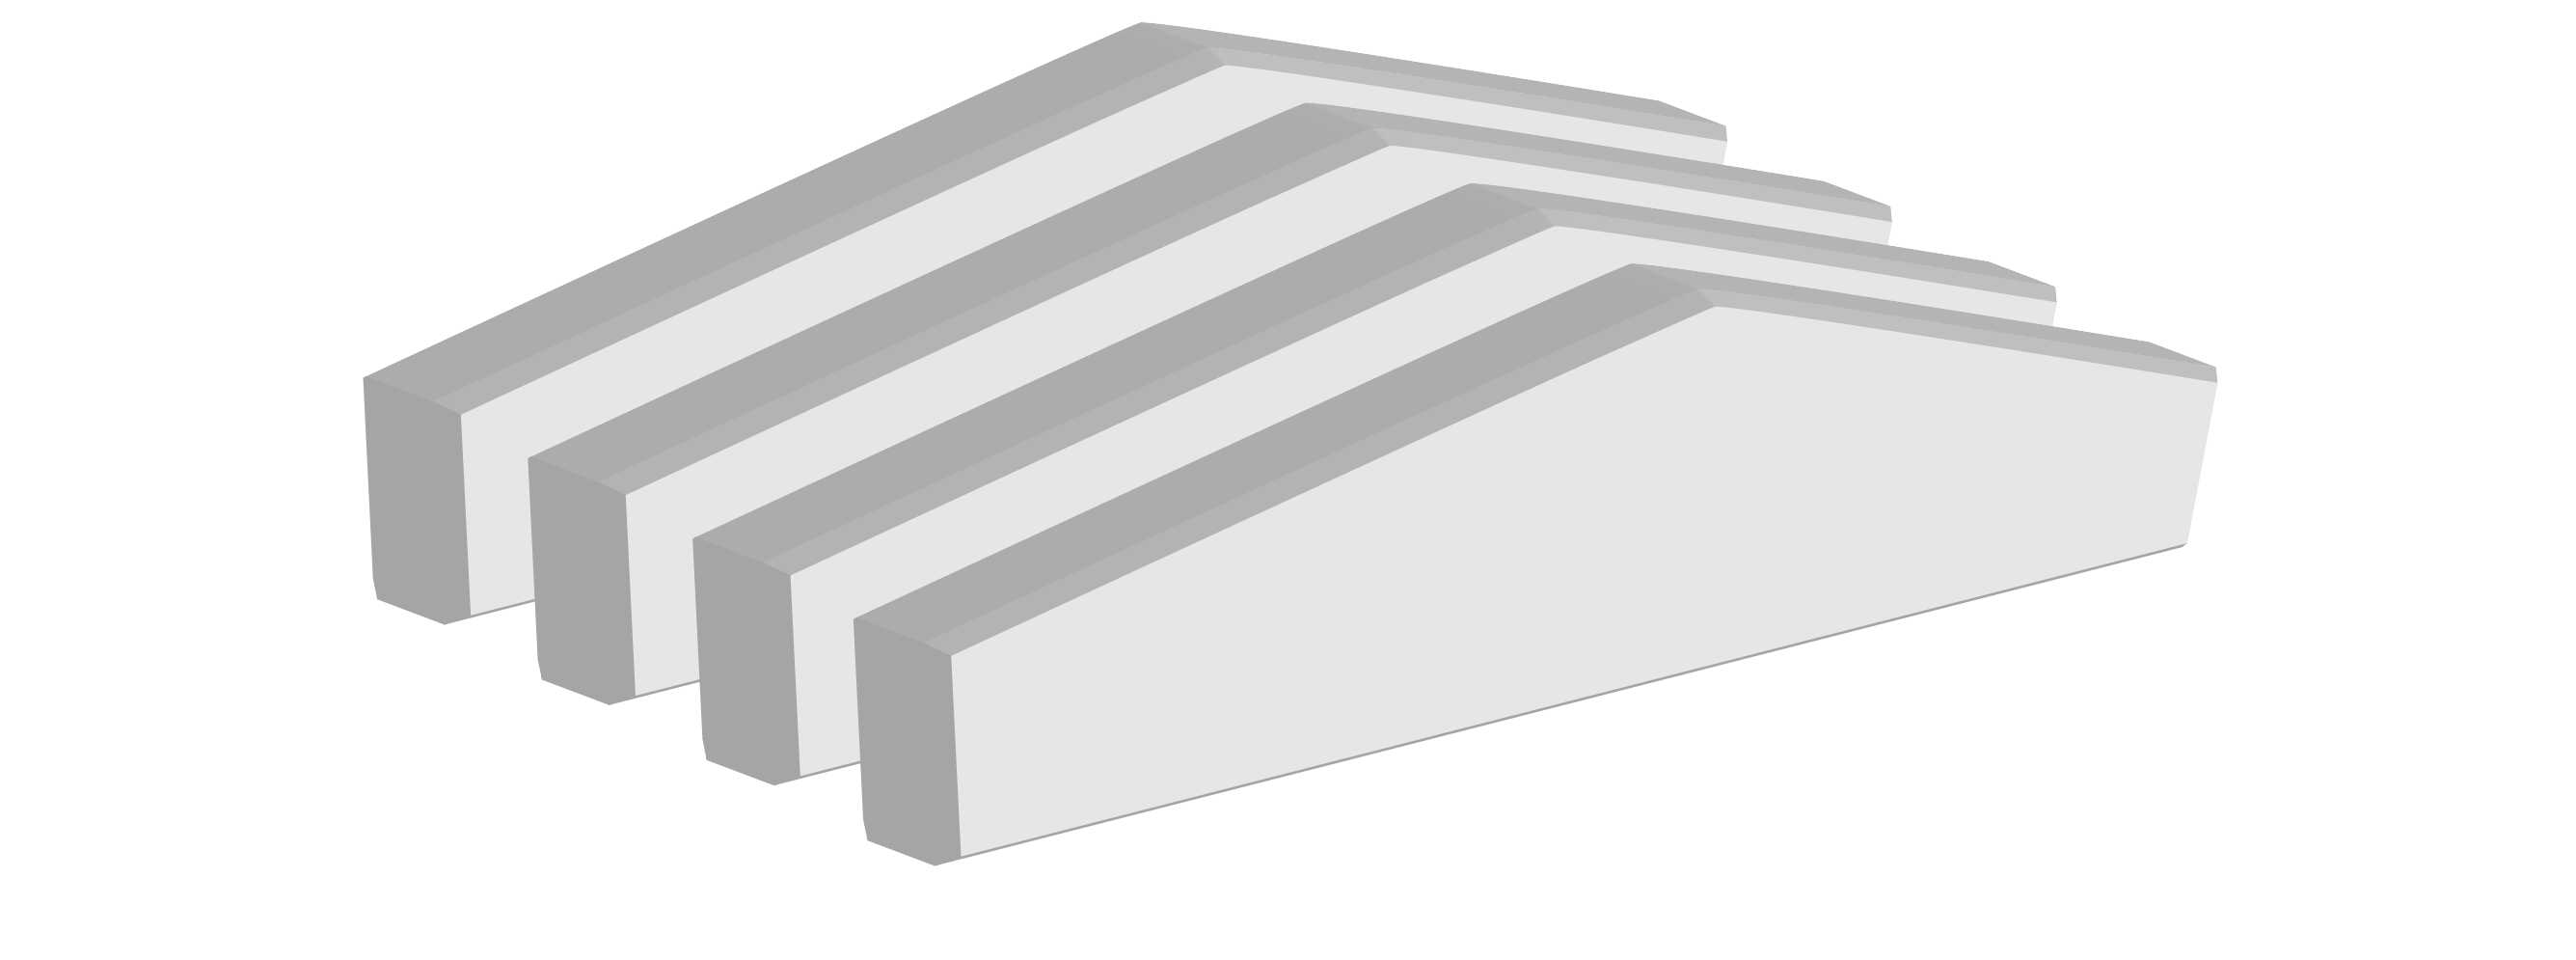 Bâtiments industriels démontables en aluminium - ALUSPACE